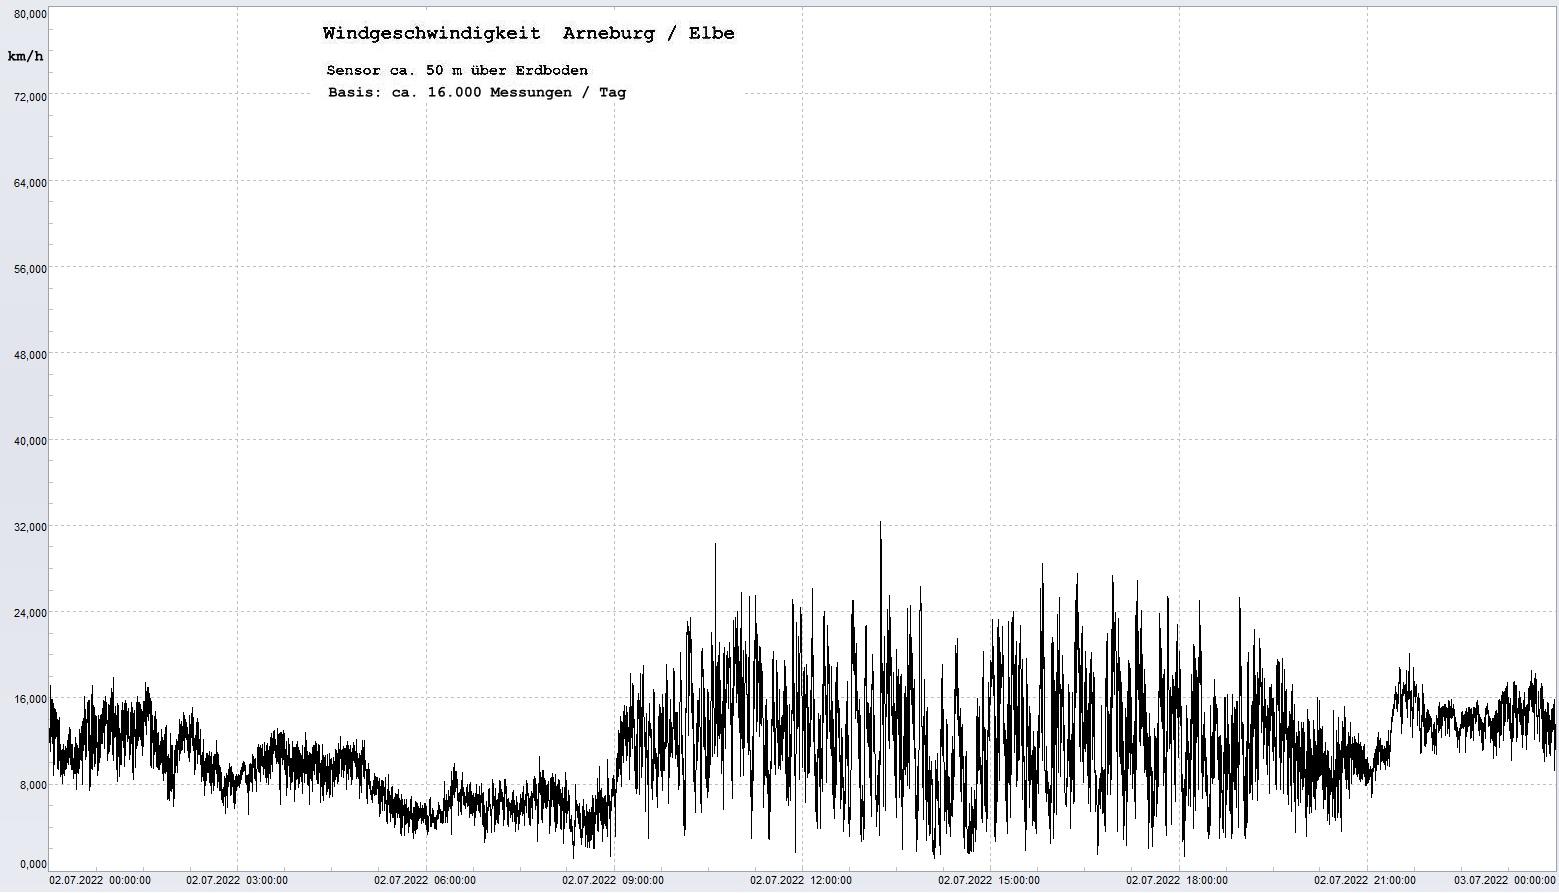 Arneburg Tages-Diagramm Winddaten, 02.07.2022
  Diagramm, Sensor auf Gebude, ca. 50 m ber Erdboden, Basis: 5s-Aufzeichnung